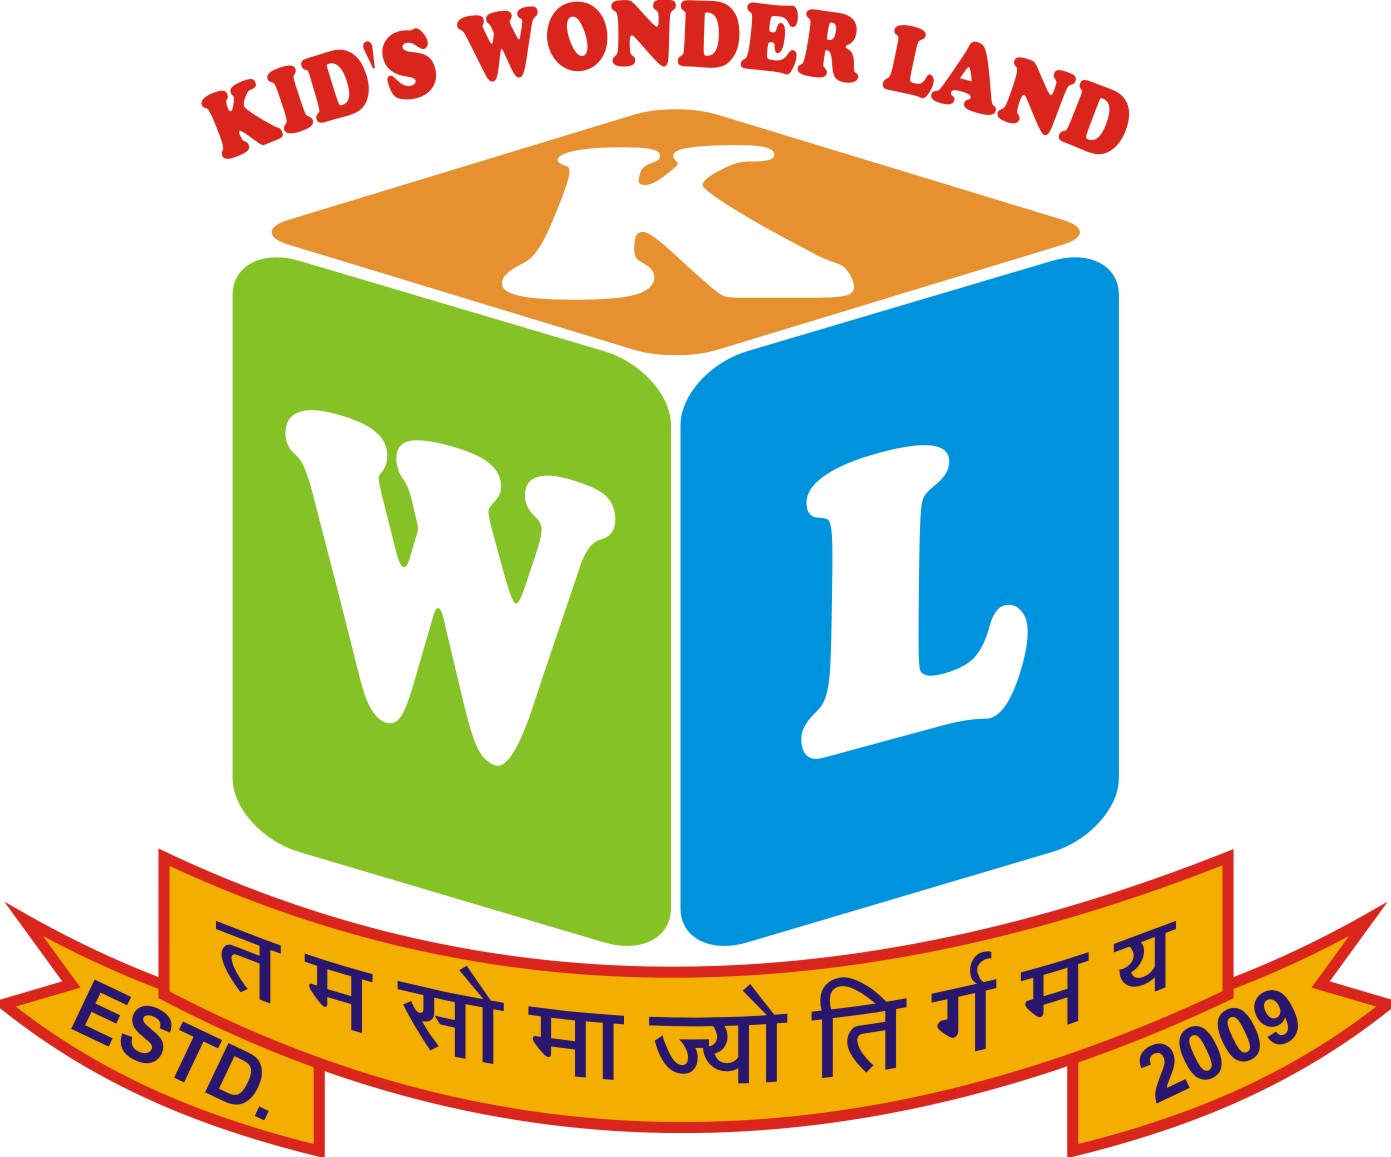 Kid's Wonder Land